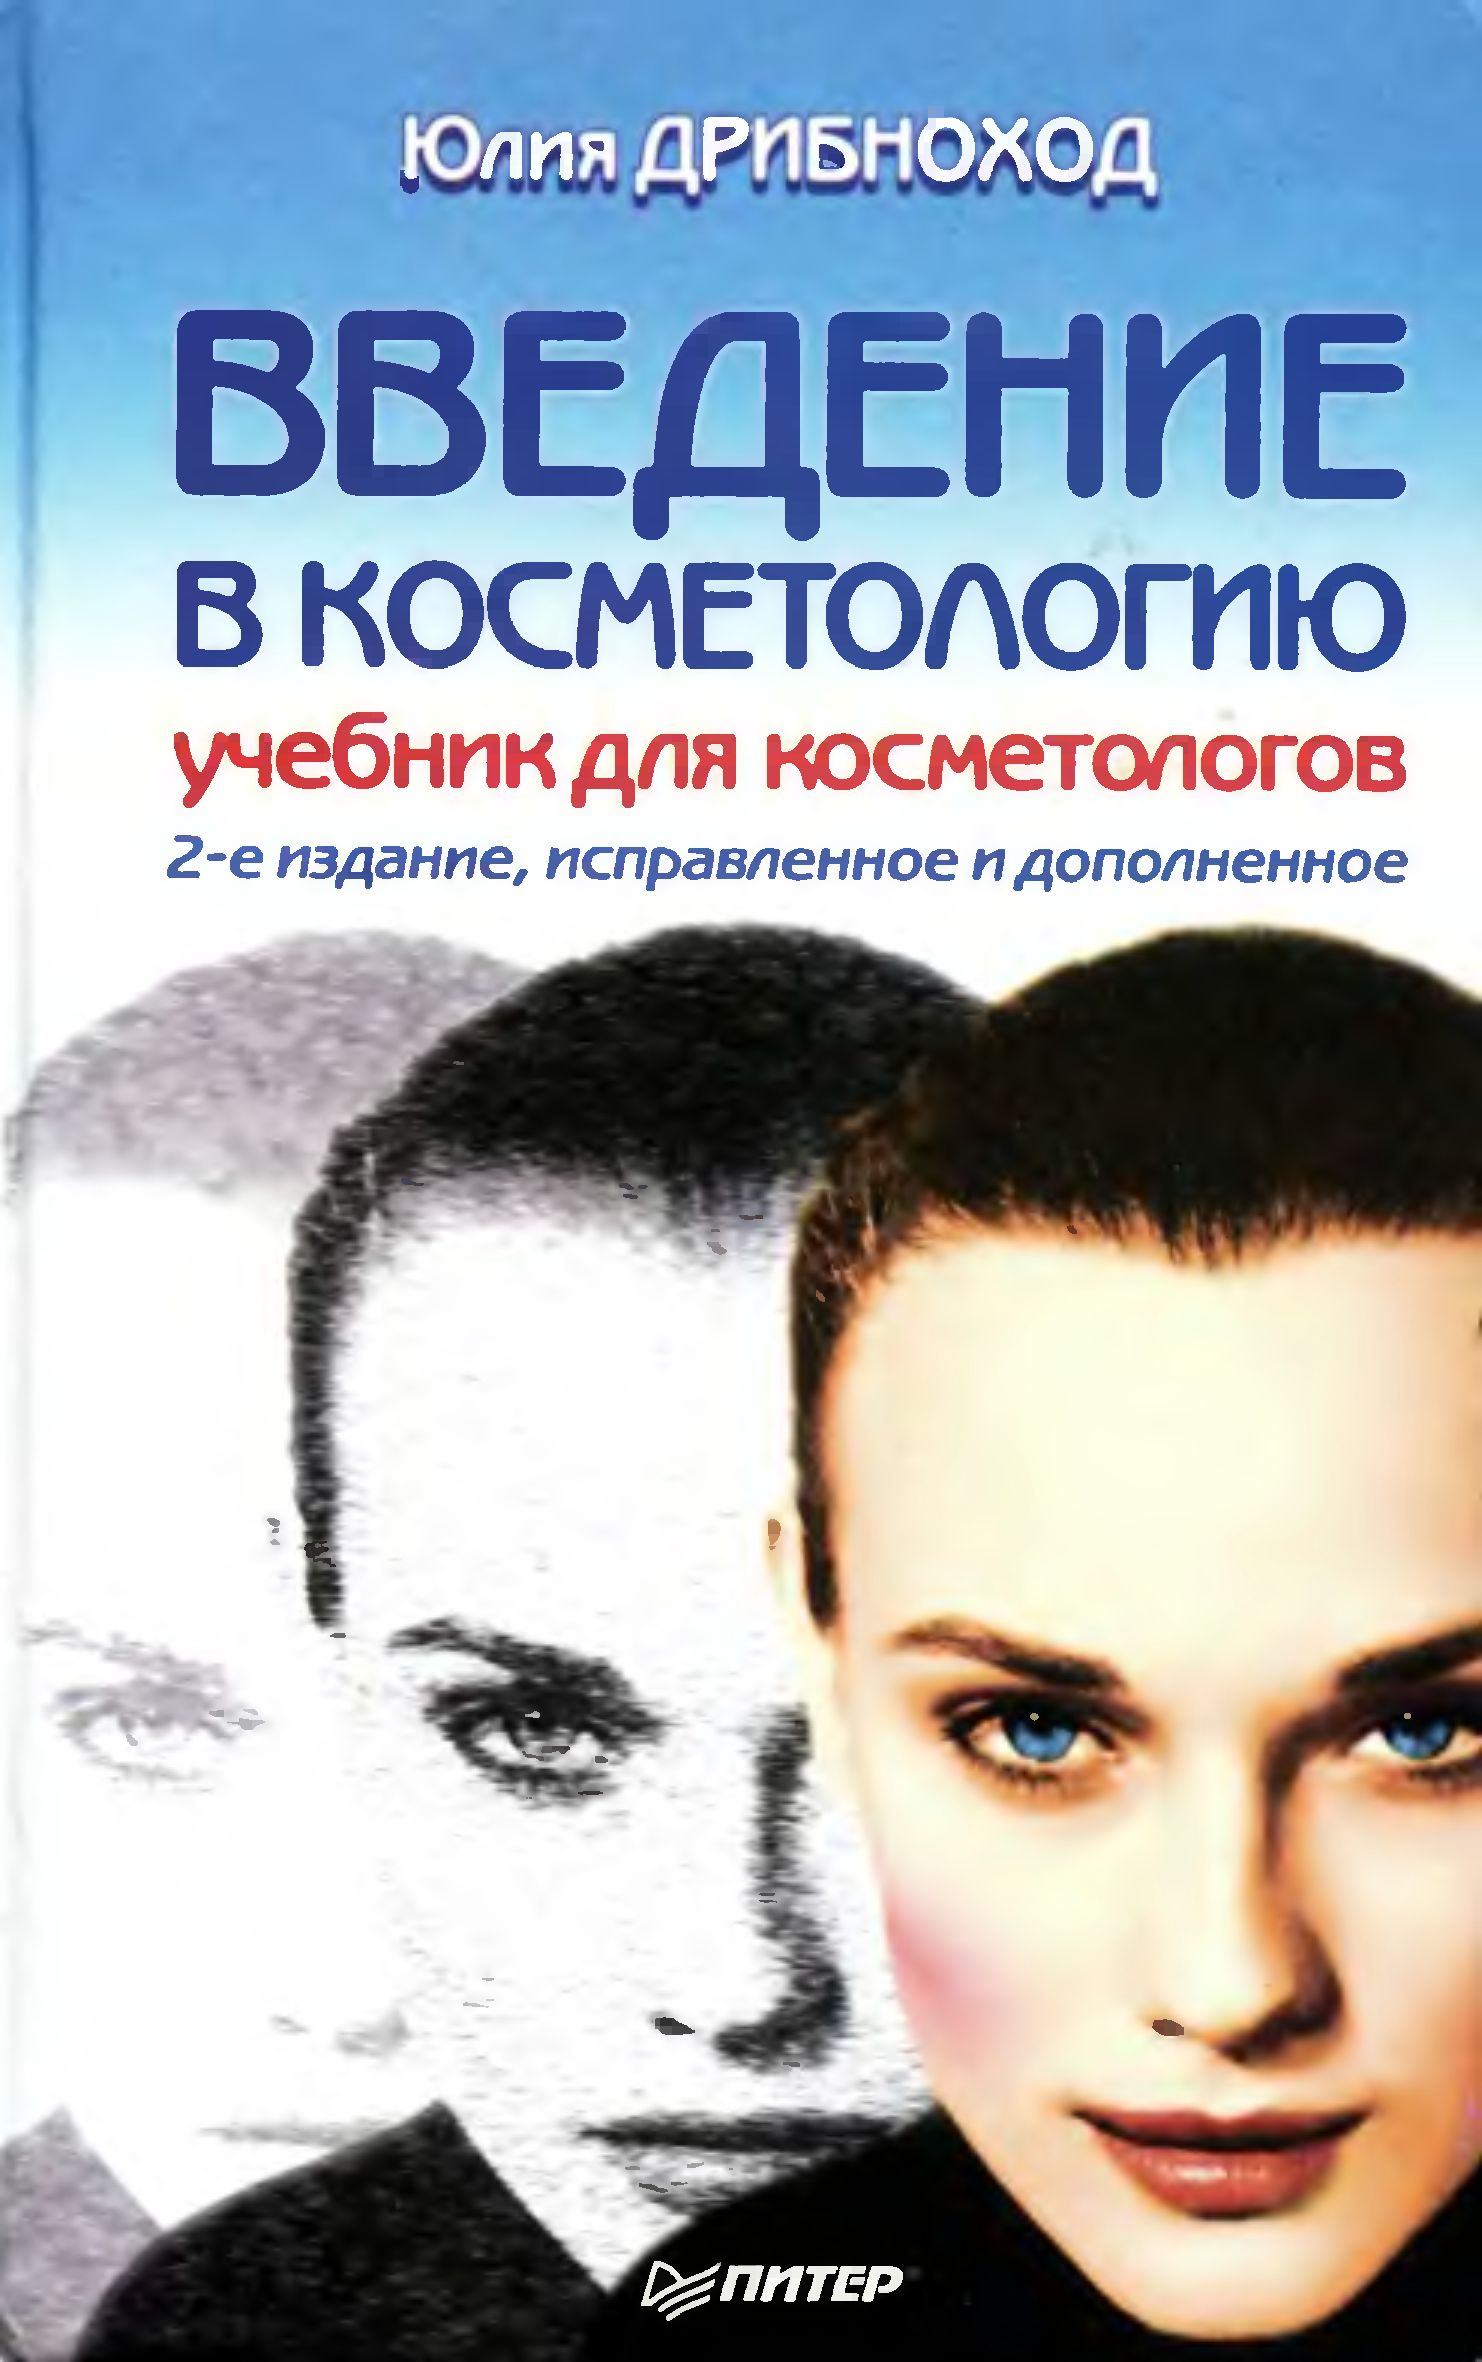 Косметология учебник. Введение в косметологию. Книги для косметологов.